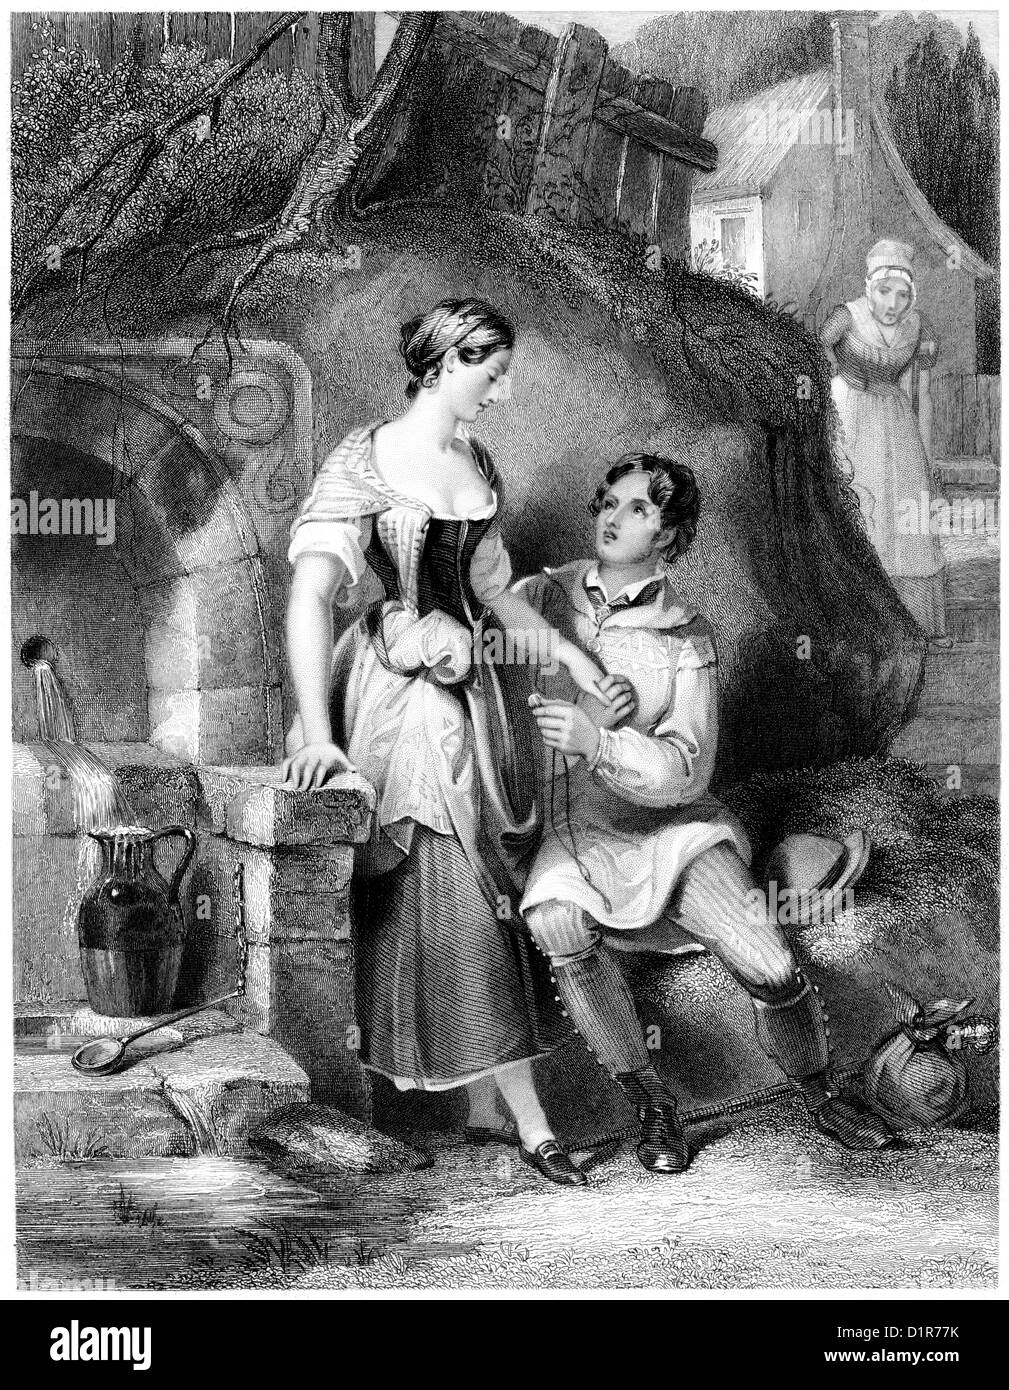 Eine Gravur mit dem Titel "The Love Token' mit hoher Auflösung aus einem Buch gescannt veröffentlicht 1841 Stockfoto